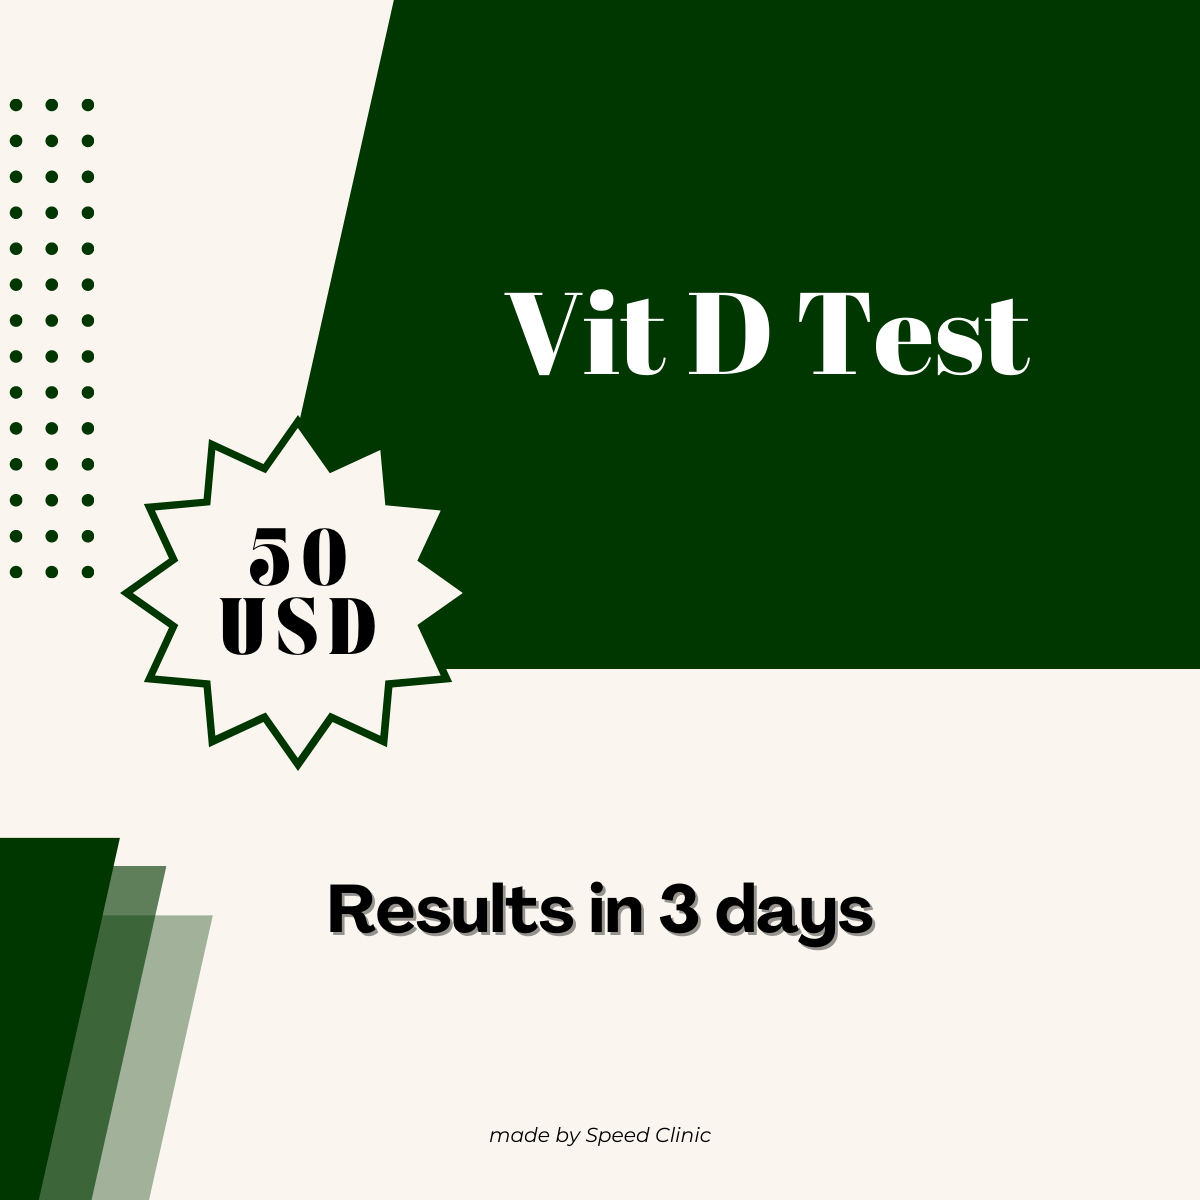 Vit D test